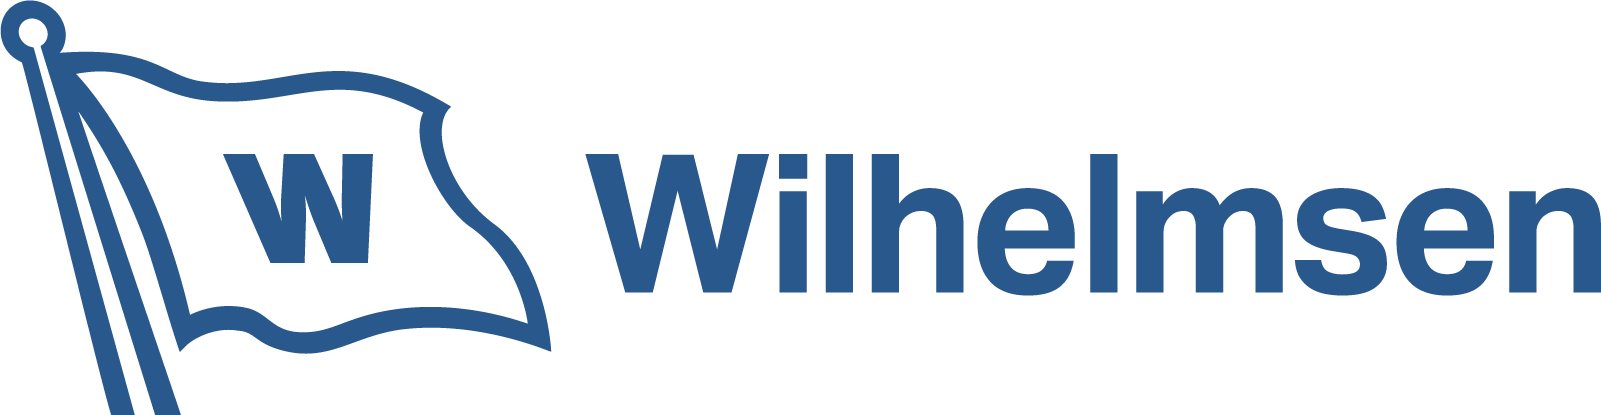 wilhelmsen_logo_rgb-1600